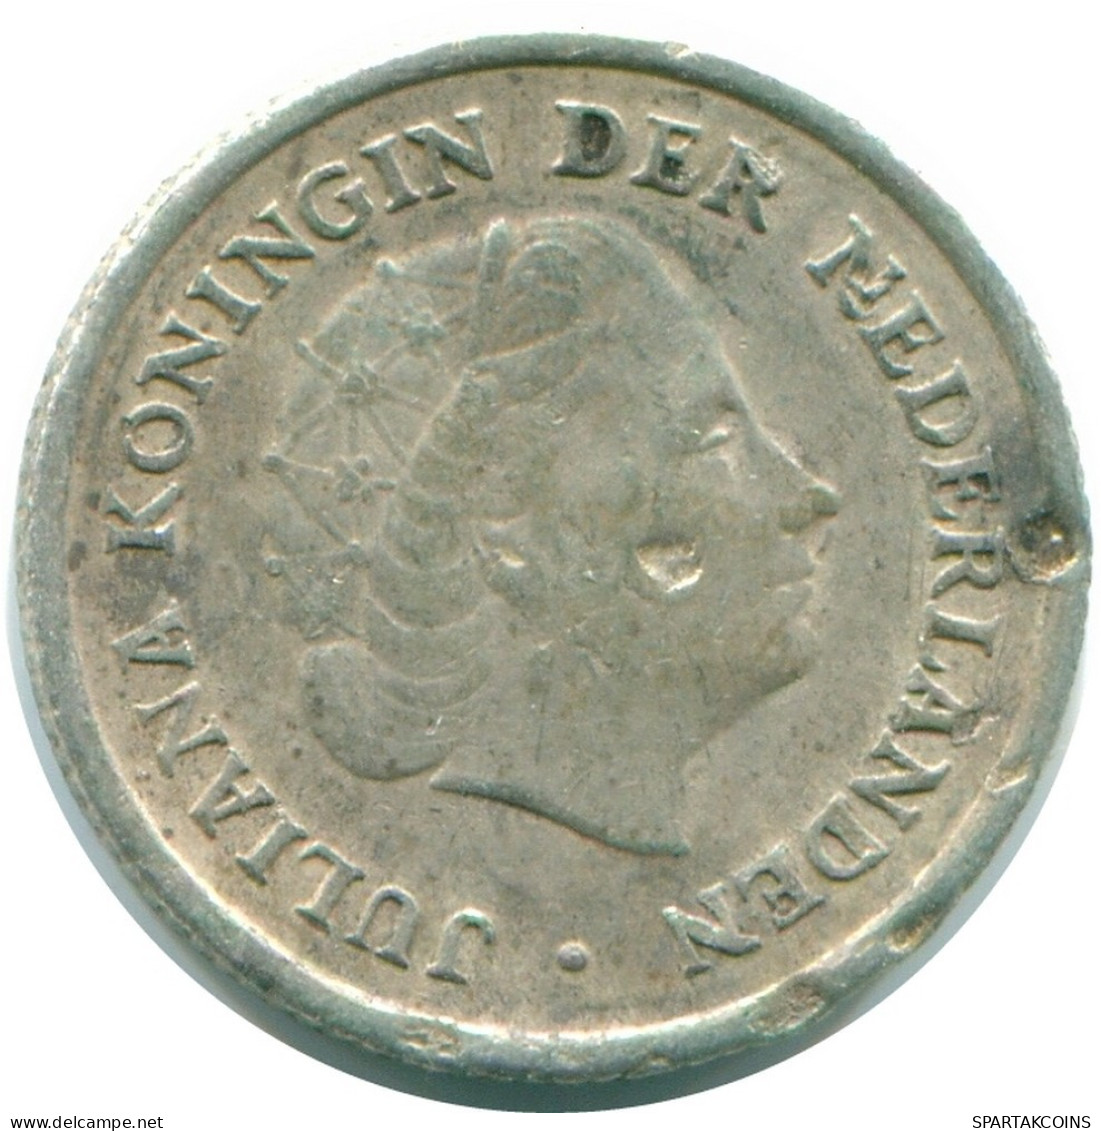 1/10 GULDEN 1957 NIEDERLÄNDISCHE ANTILLEN SILBER Koloniale Münze #NL12184.3.D.A - Antilles Néerlandaises